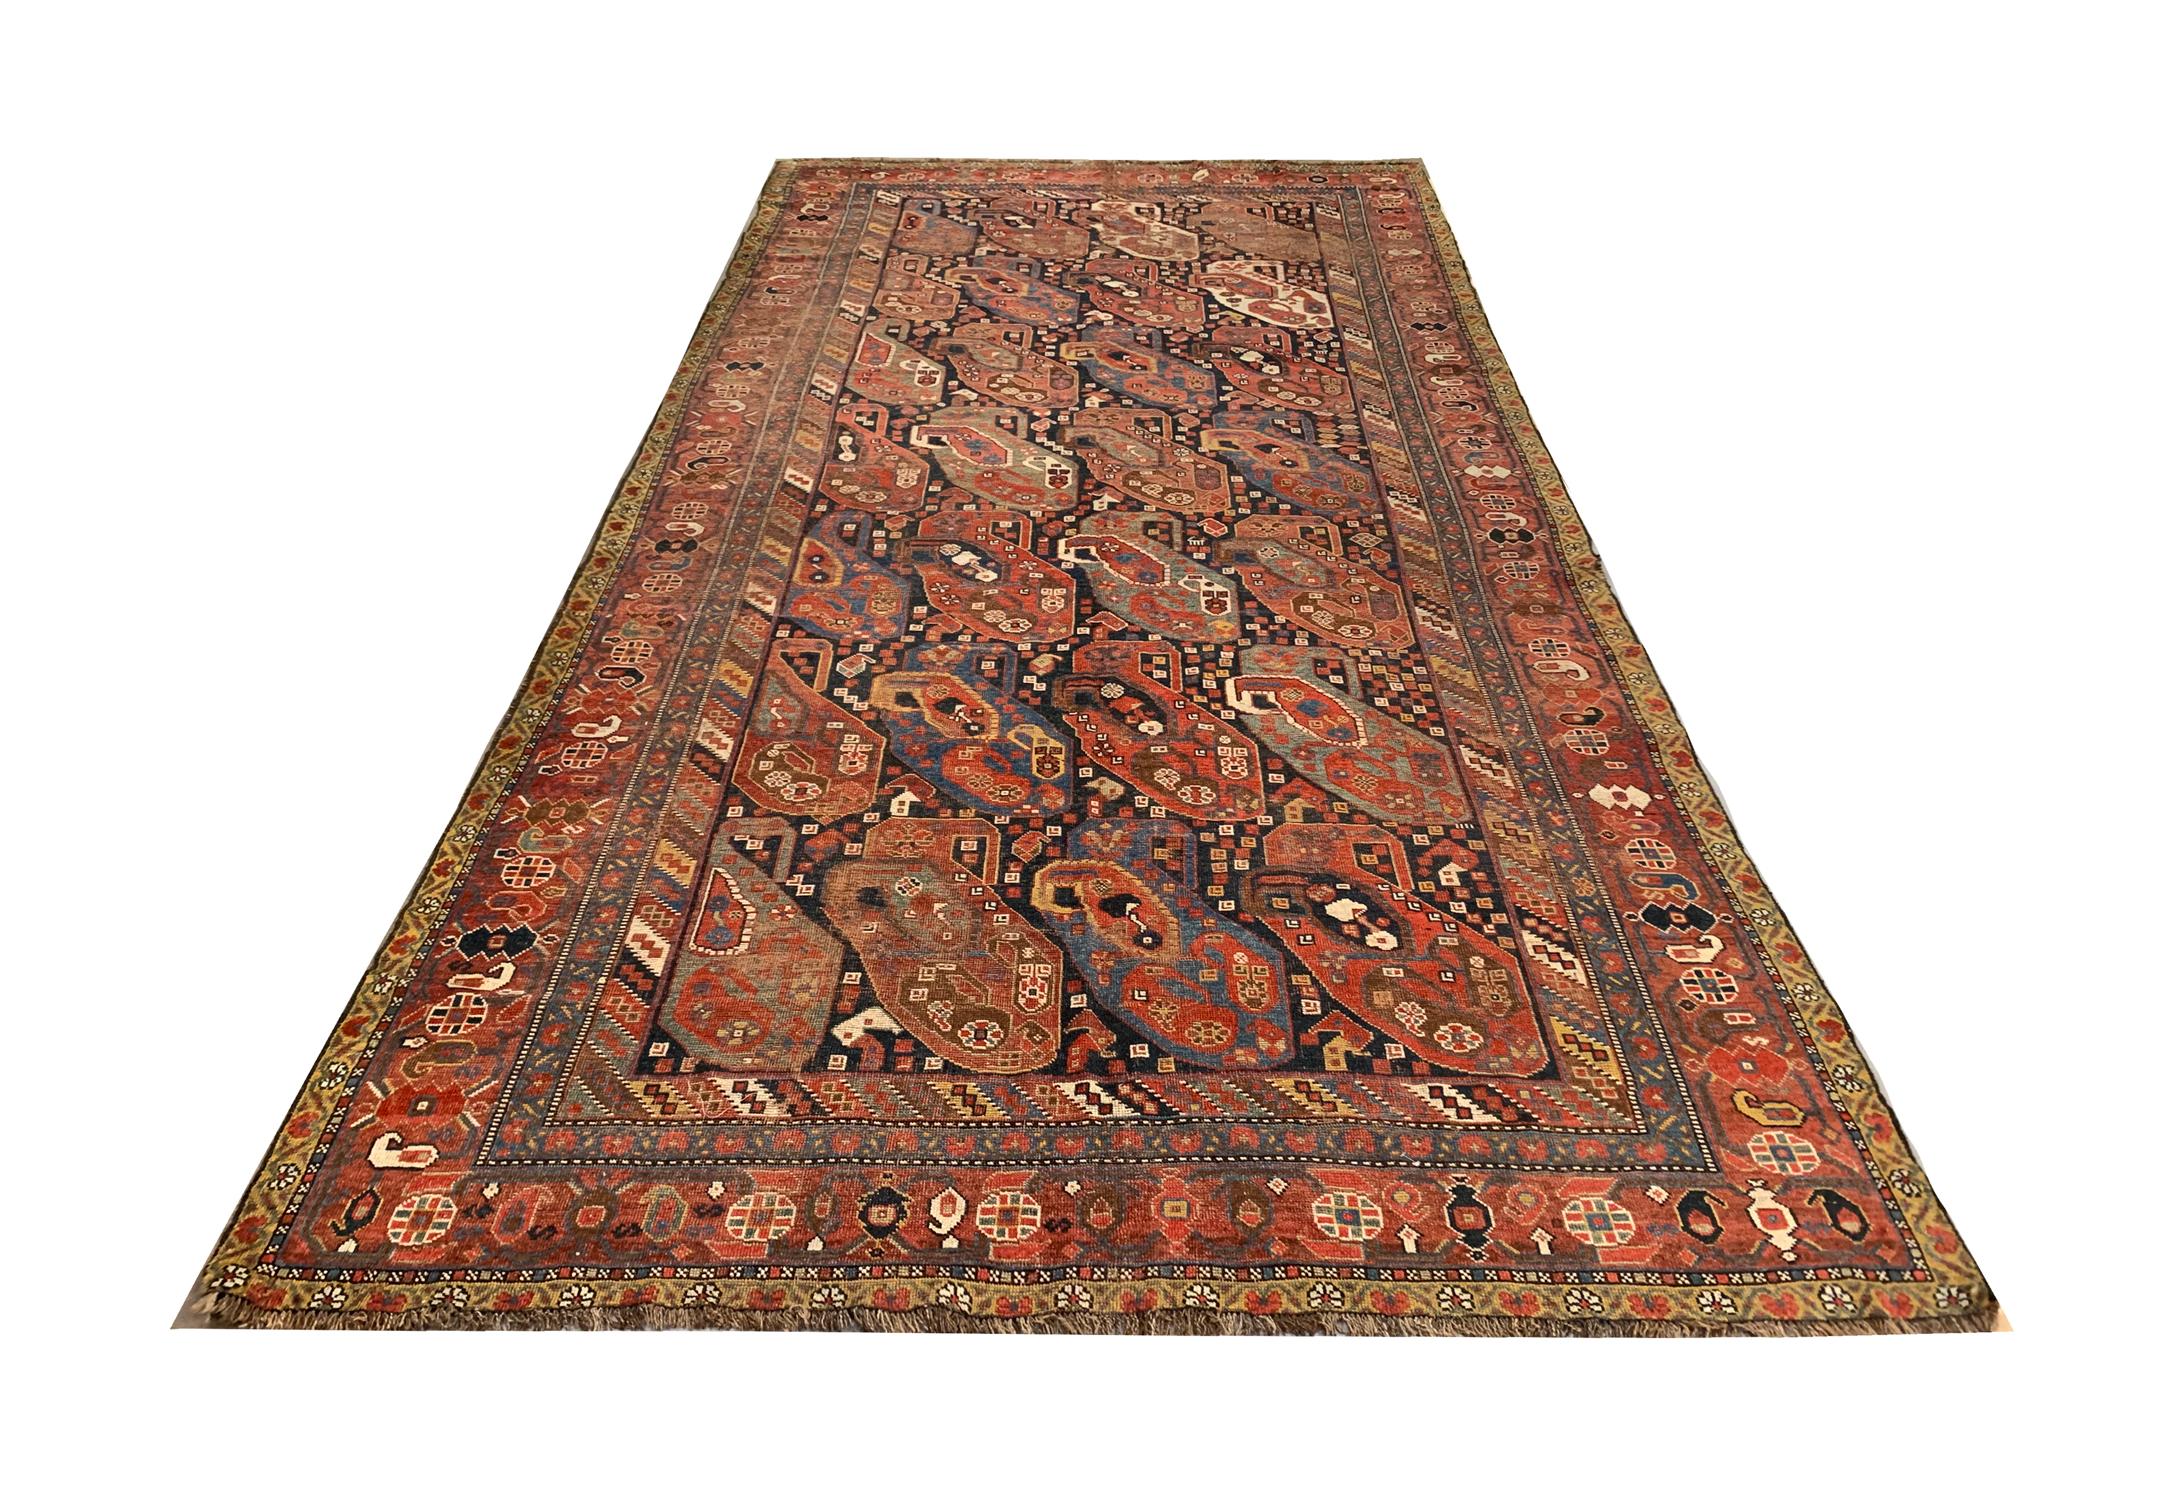 Vous êtes à la recherche d'une pièce ancienne pour pimenter votre intérieur ? Ce beau tapis en laine du Caucase est l'accessoire d'accentuation parfait pour les maisons classiques et traditionnelles. Ce style de tapis élégant est populaire dans les